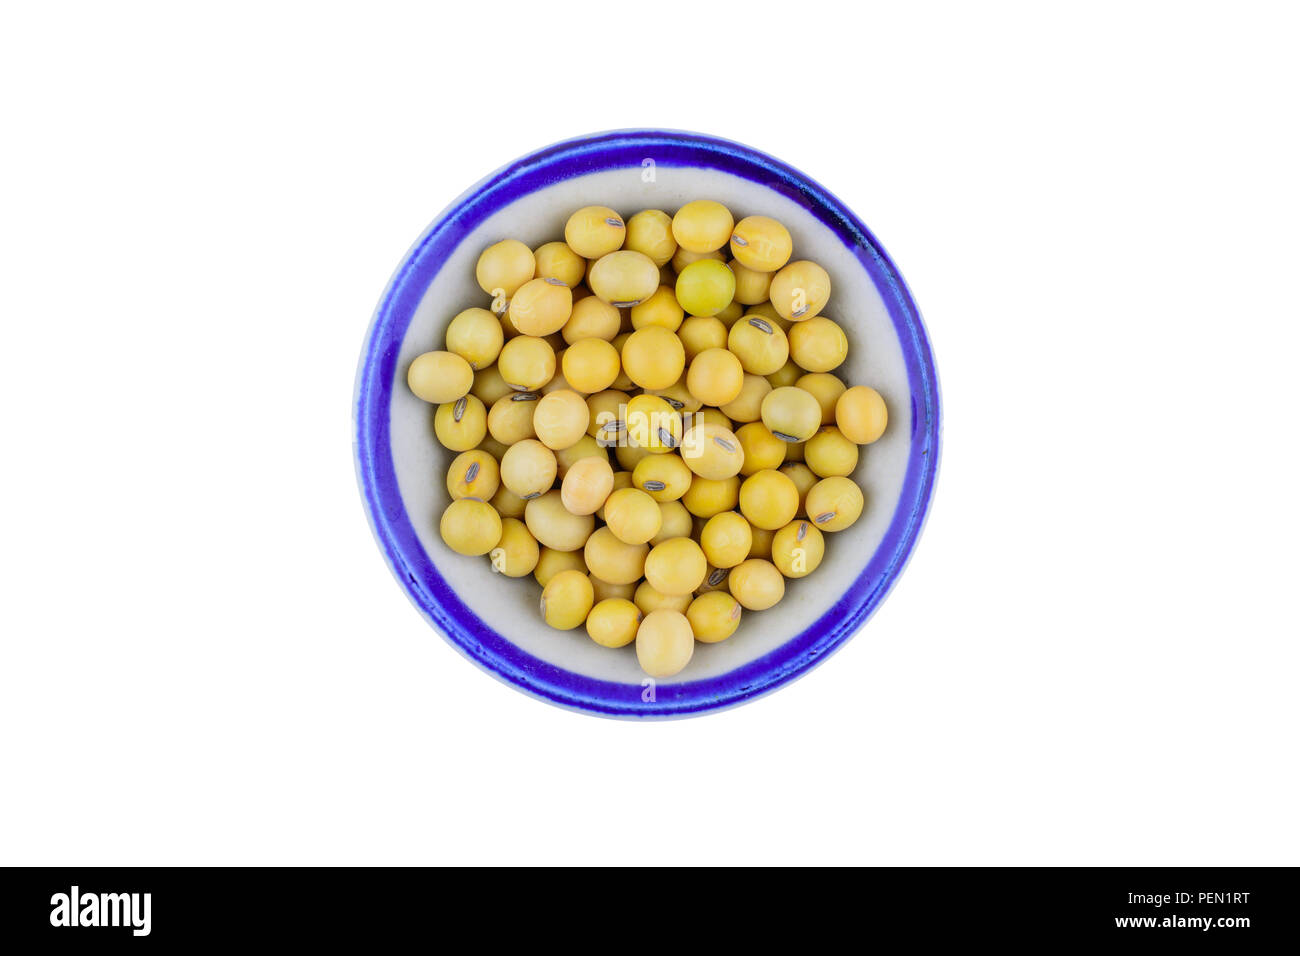 Les graines de soja dans un bol isolé sur fond blanc avec chemin de coupure de l'alimentation et la nutrition saine.concept. Banque D'Images